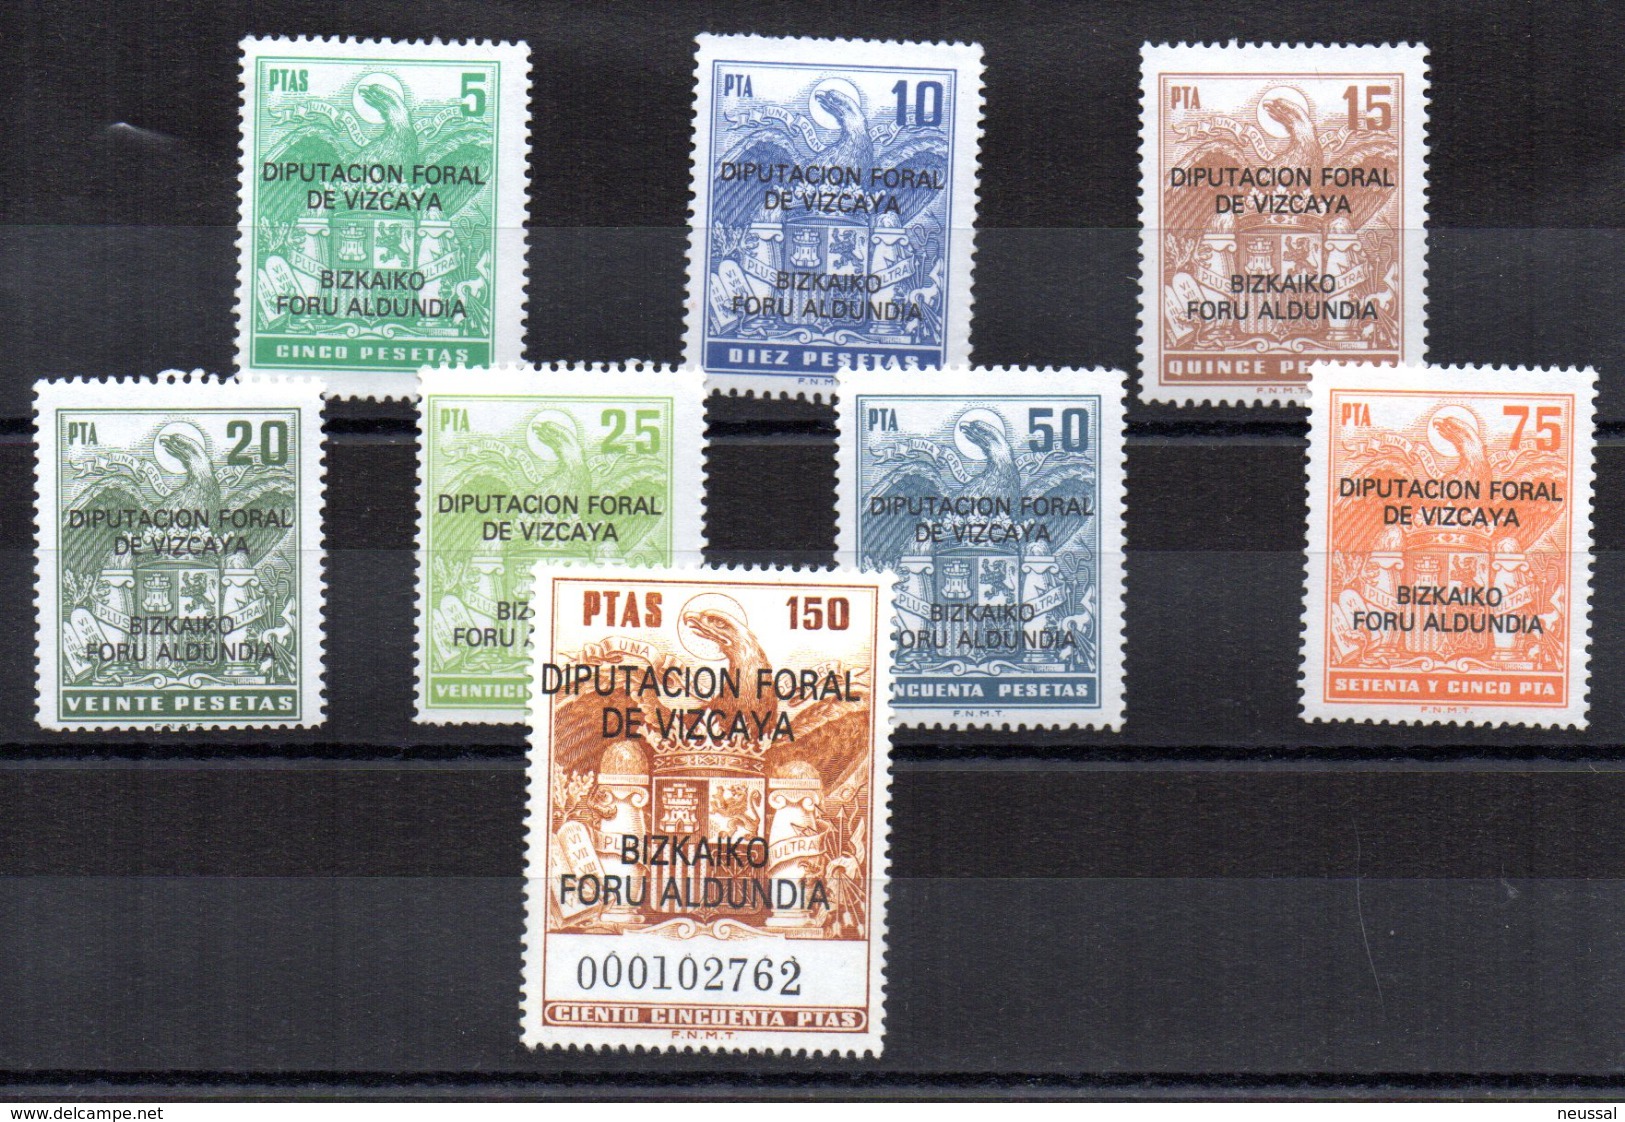 Sellos Fiscales De Vizcaya - Revenue Stamps